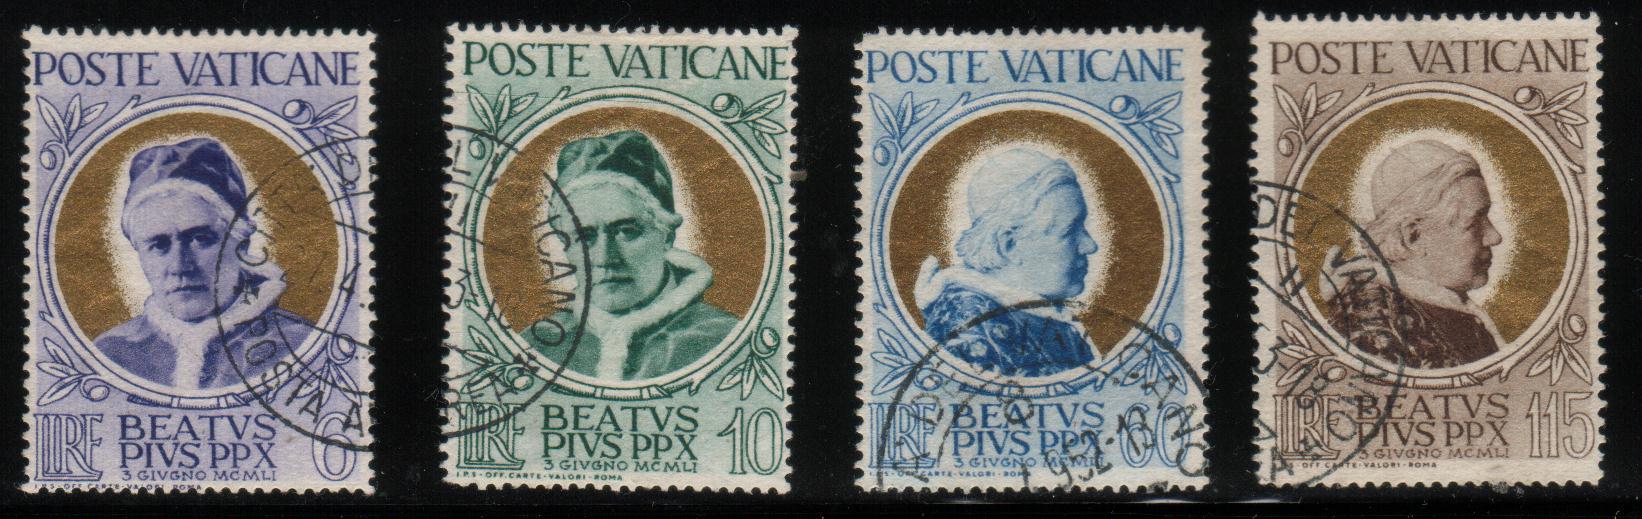 VATICAN 1951 BEATIFICATION OF POPE PIUS X SET OF 4 VFU VATICANE VATICANO SG 164 - 167 - Usados